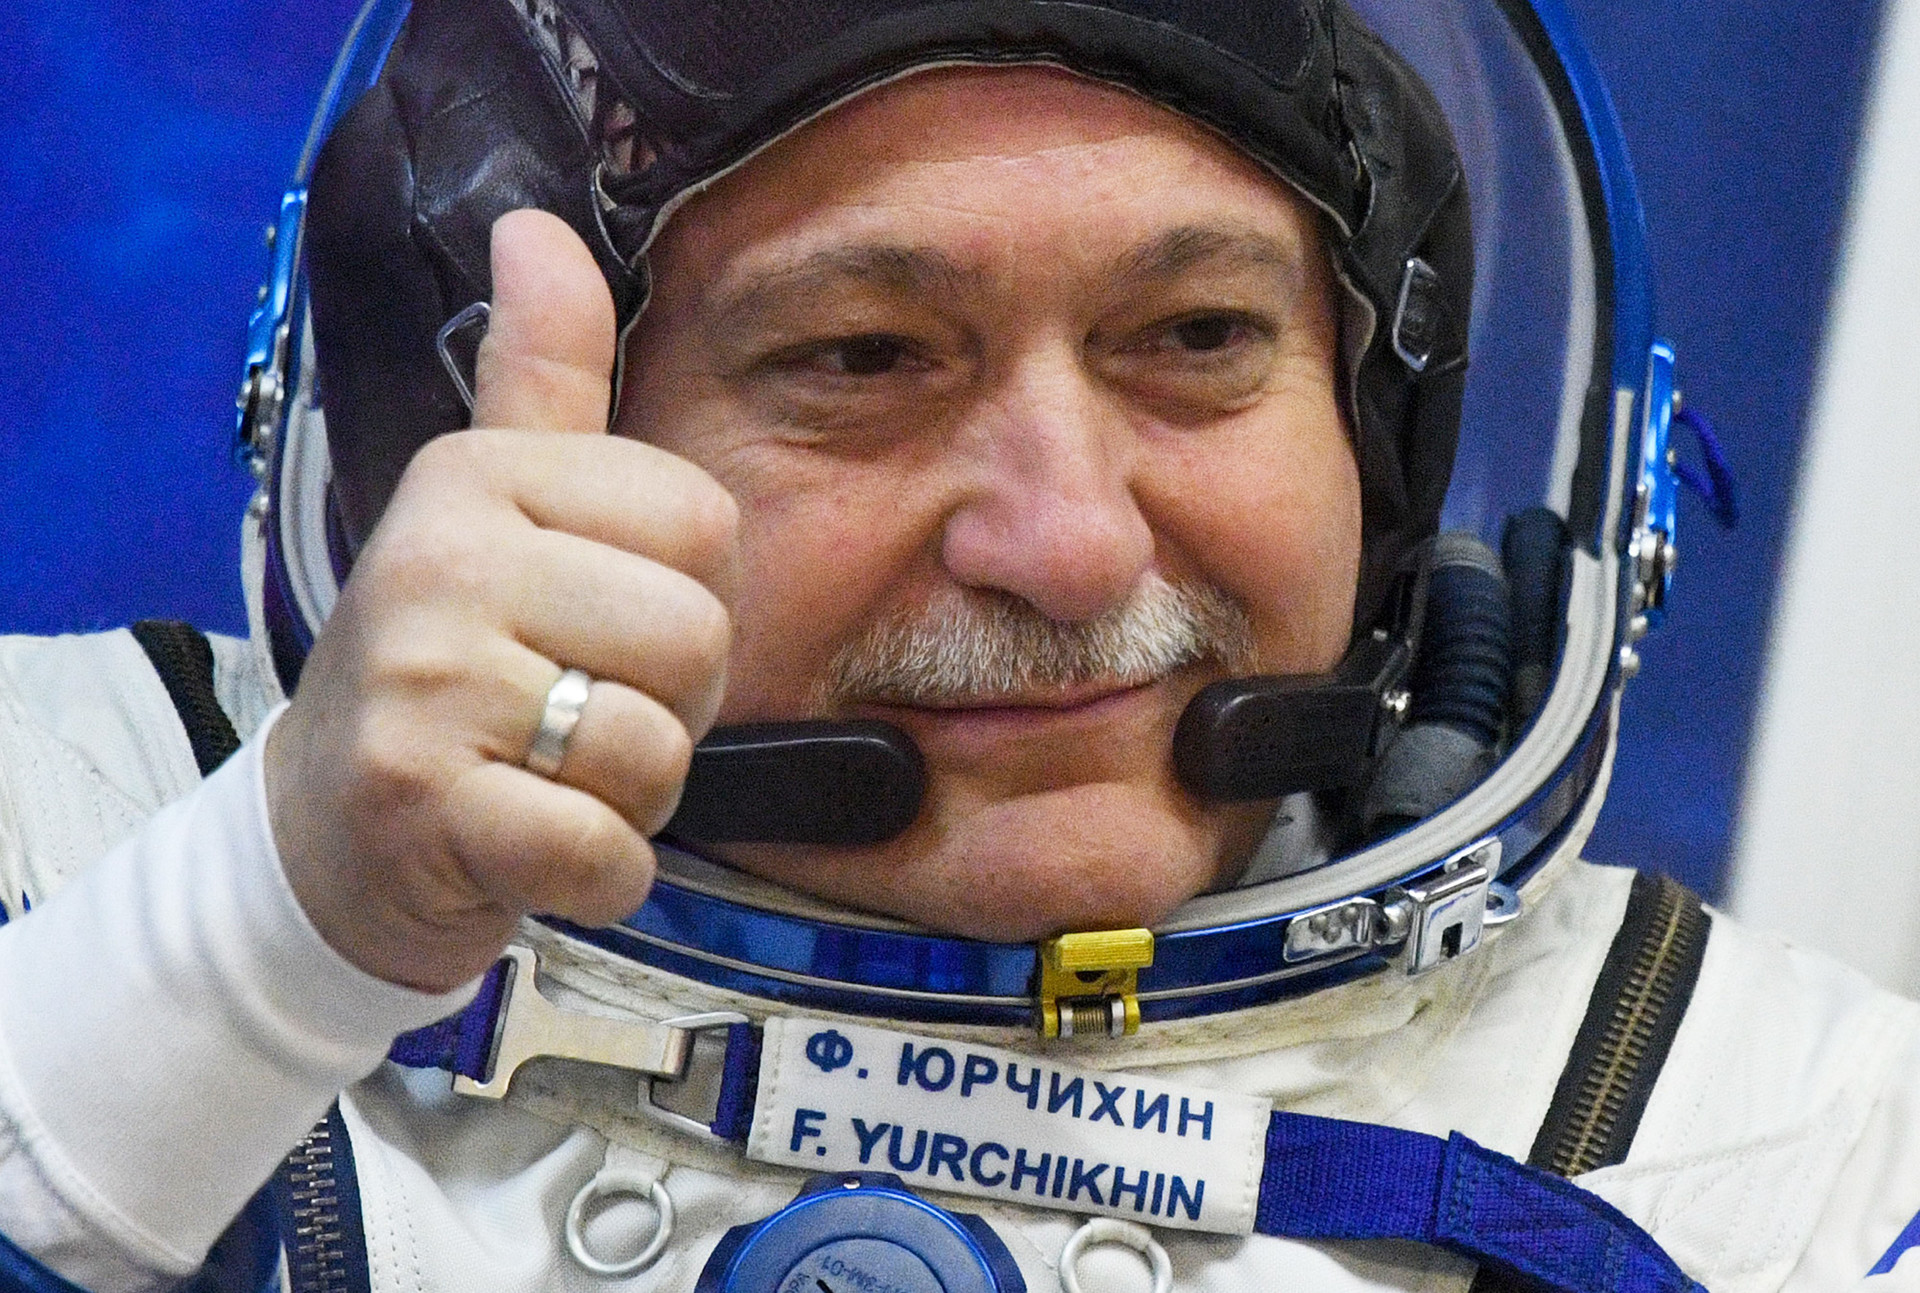 Космонавт Роскосмоса Федор Юрчихин перед стартом космического корабля 